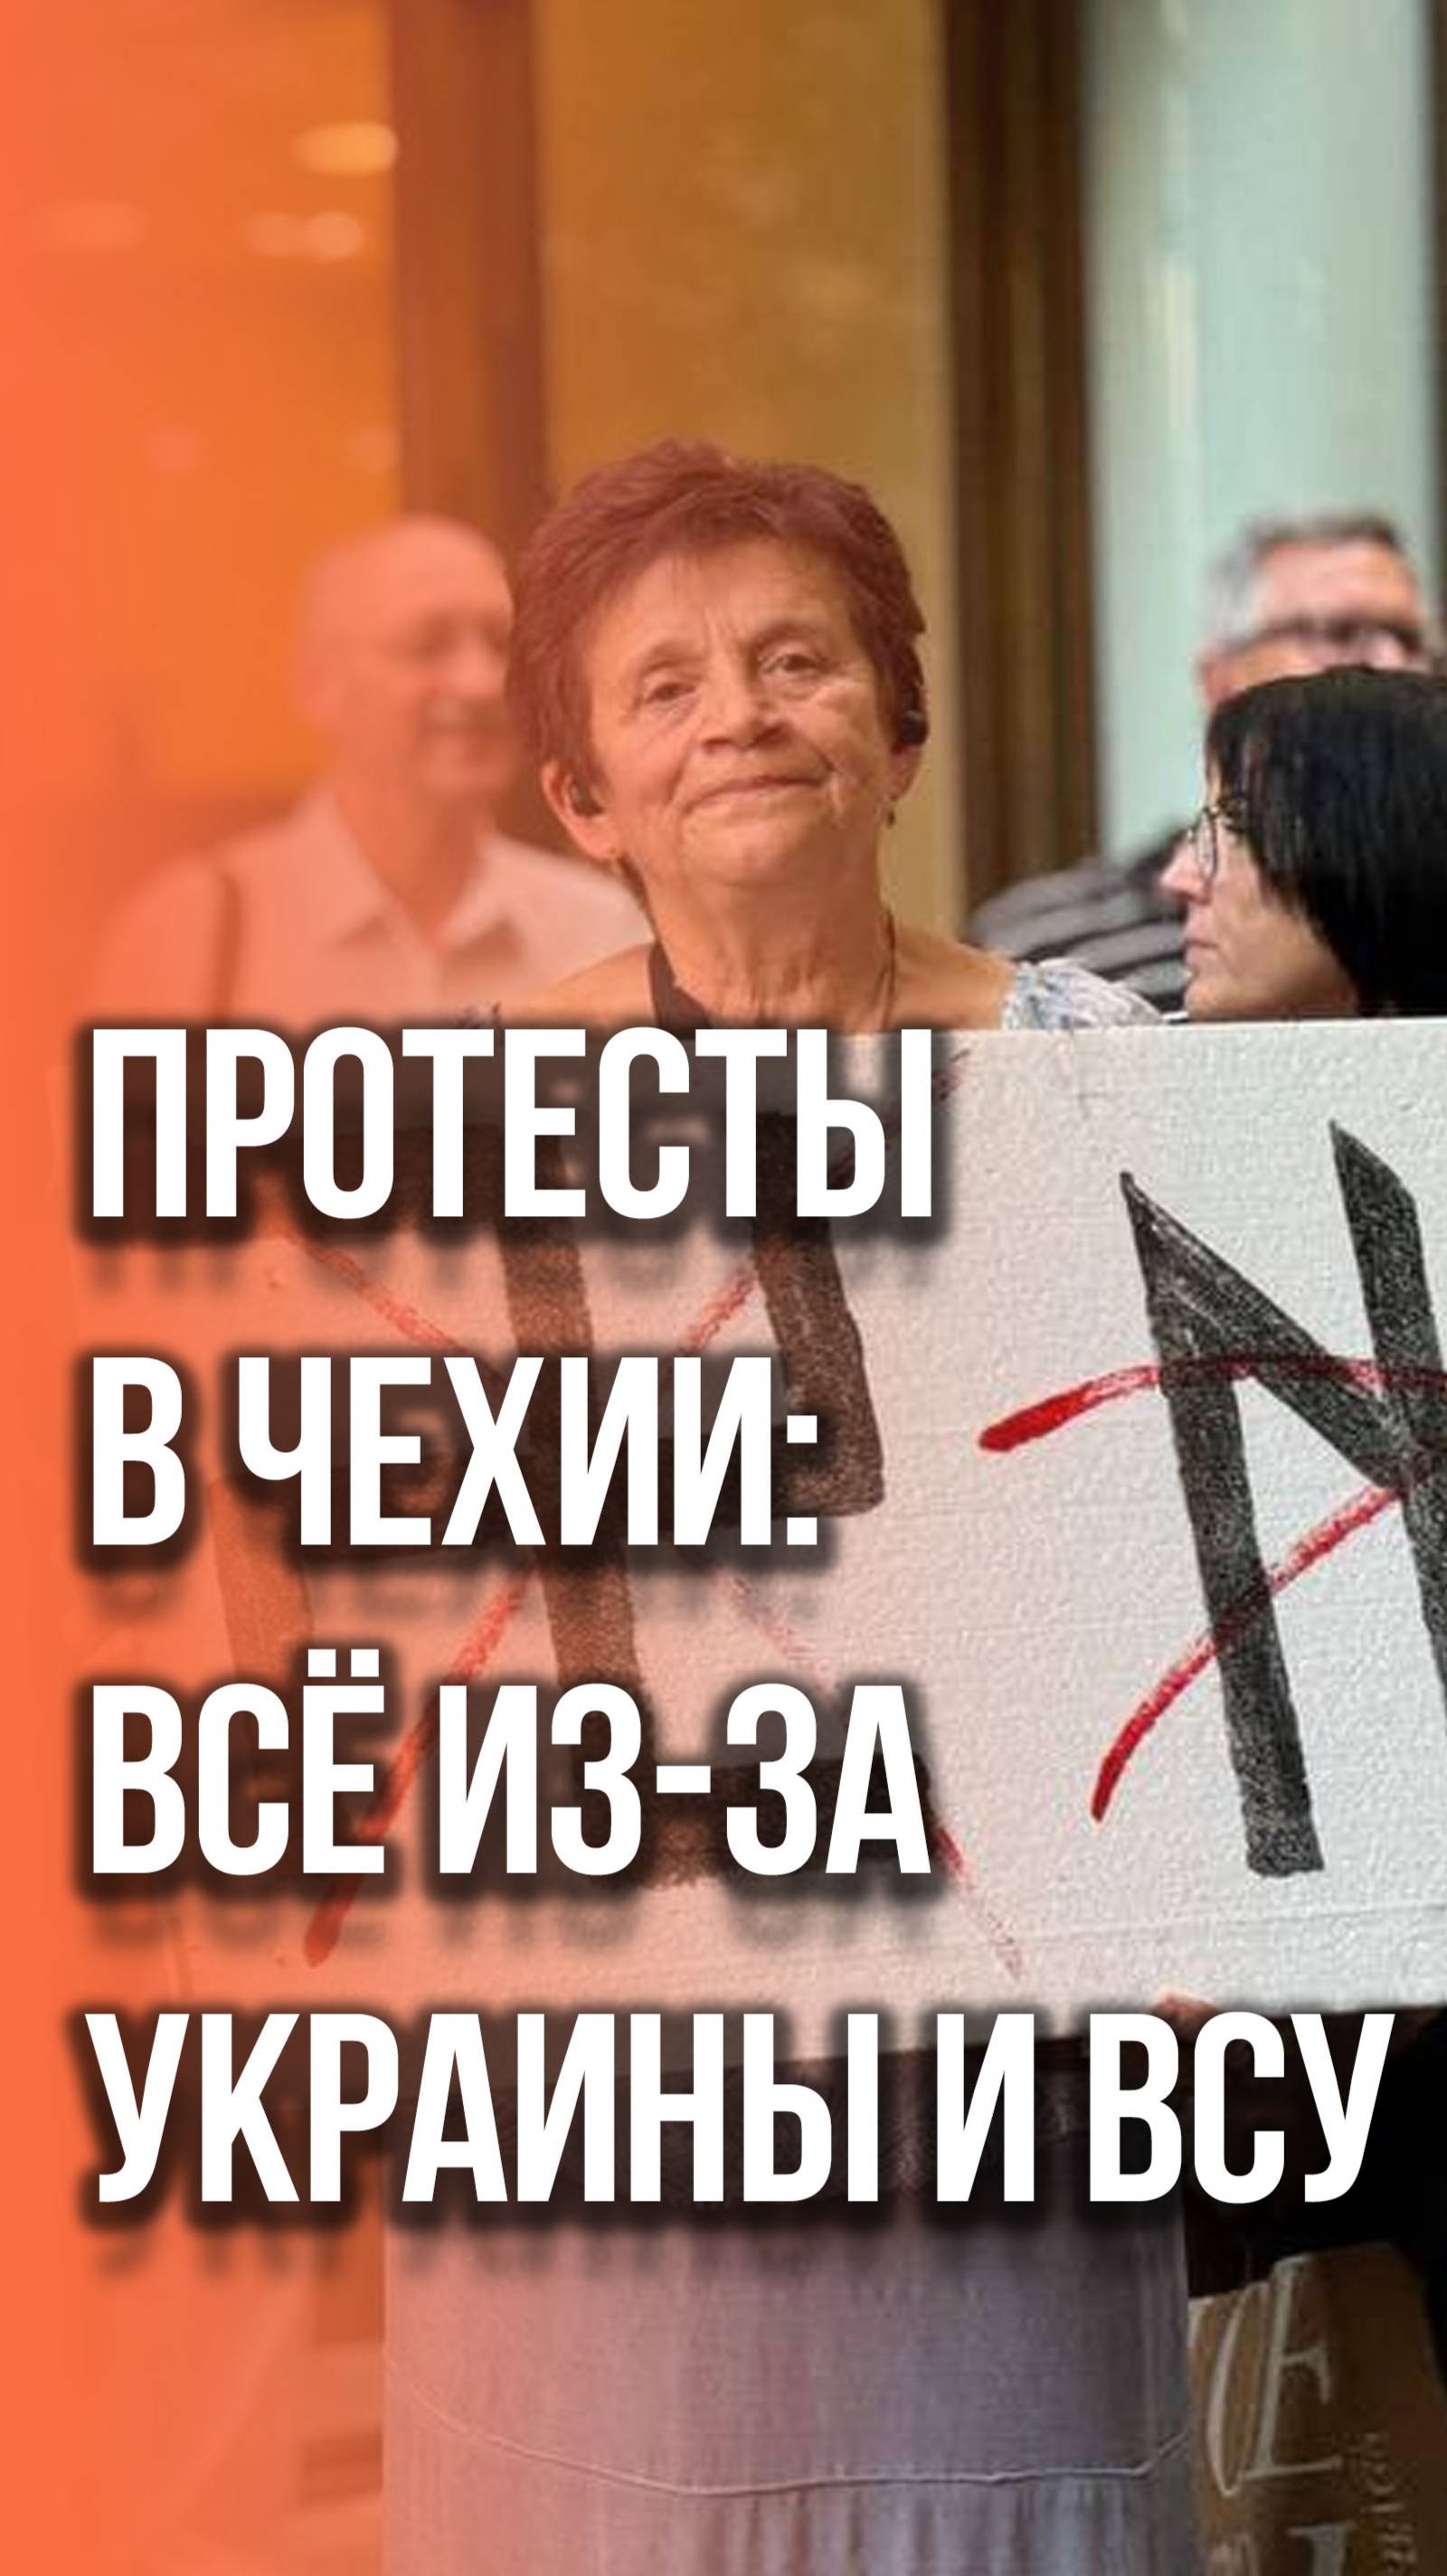 Неожиданный поворот: что граждане Чехии принесли на акцию протеста против Украины